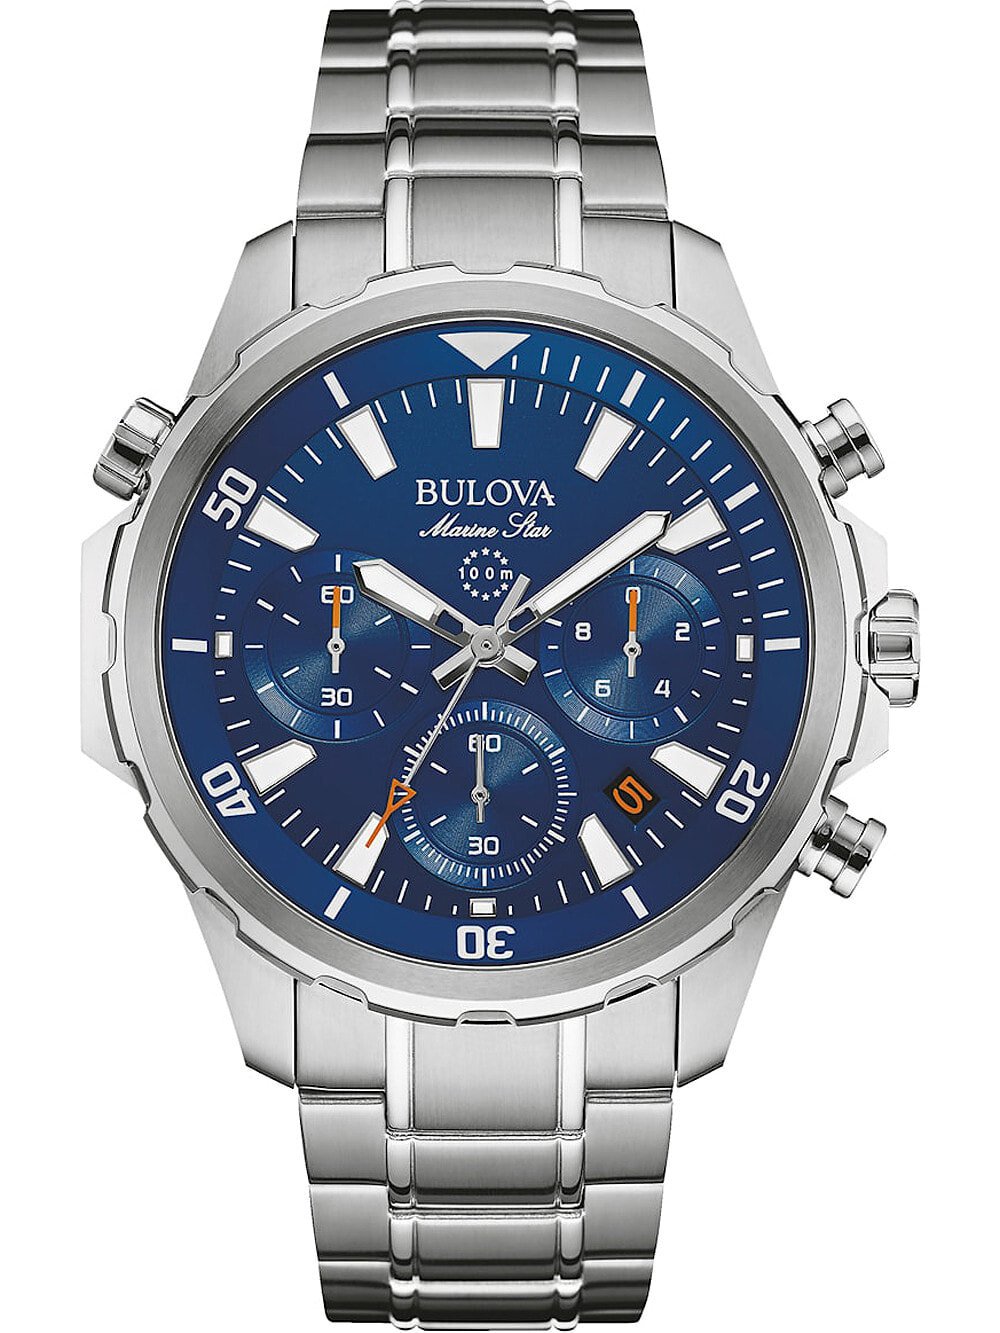 Мужские наручные часы с серебряным браслетом Bulova 96B256 Marine Star chrono 43mm 10ATM